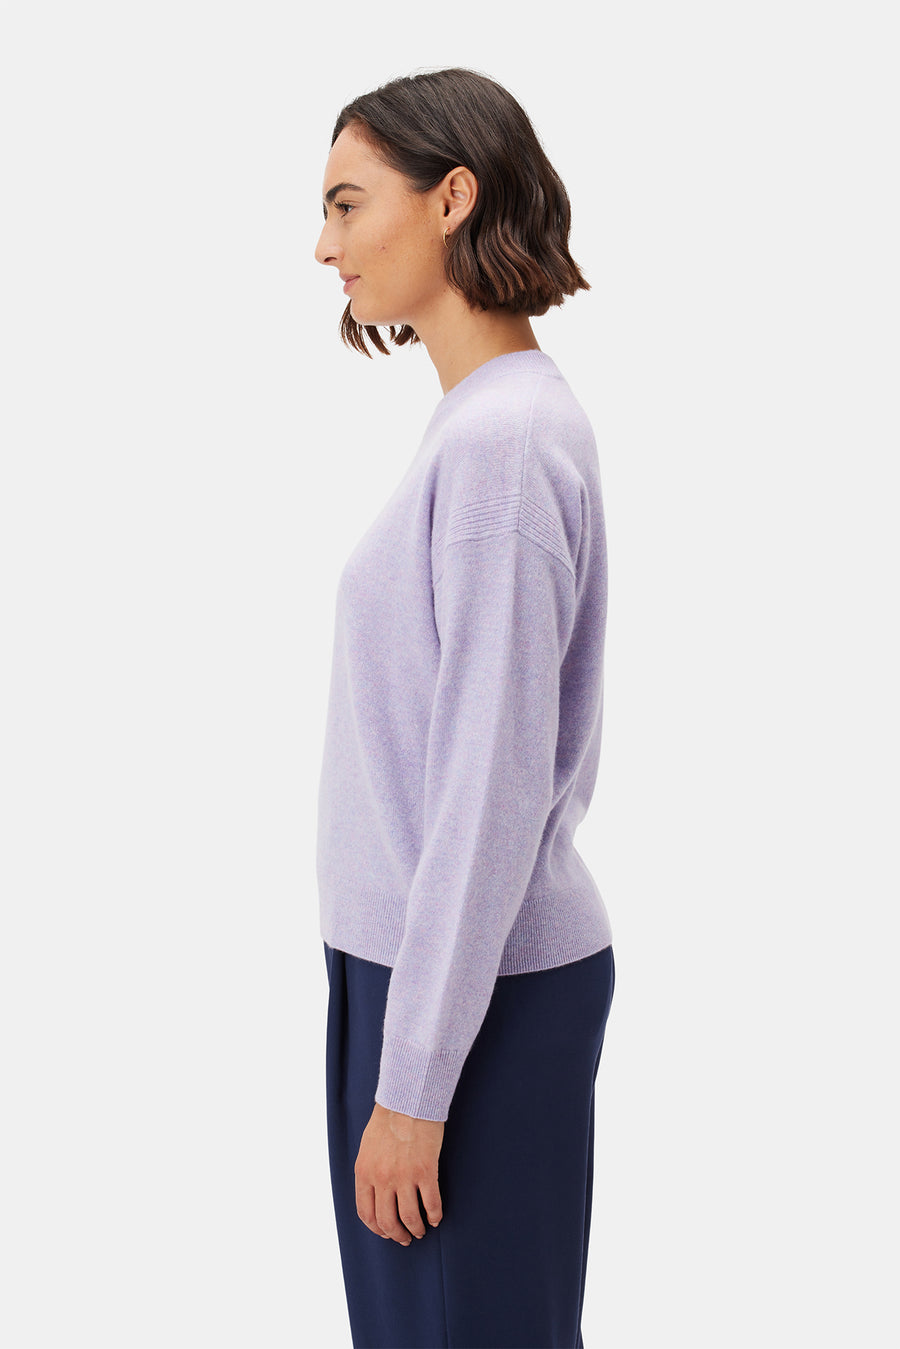 Pearl Cashmere Sweater - Wisteria